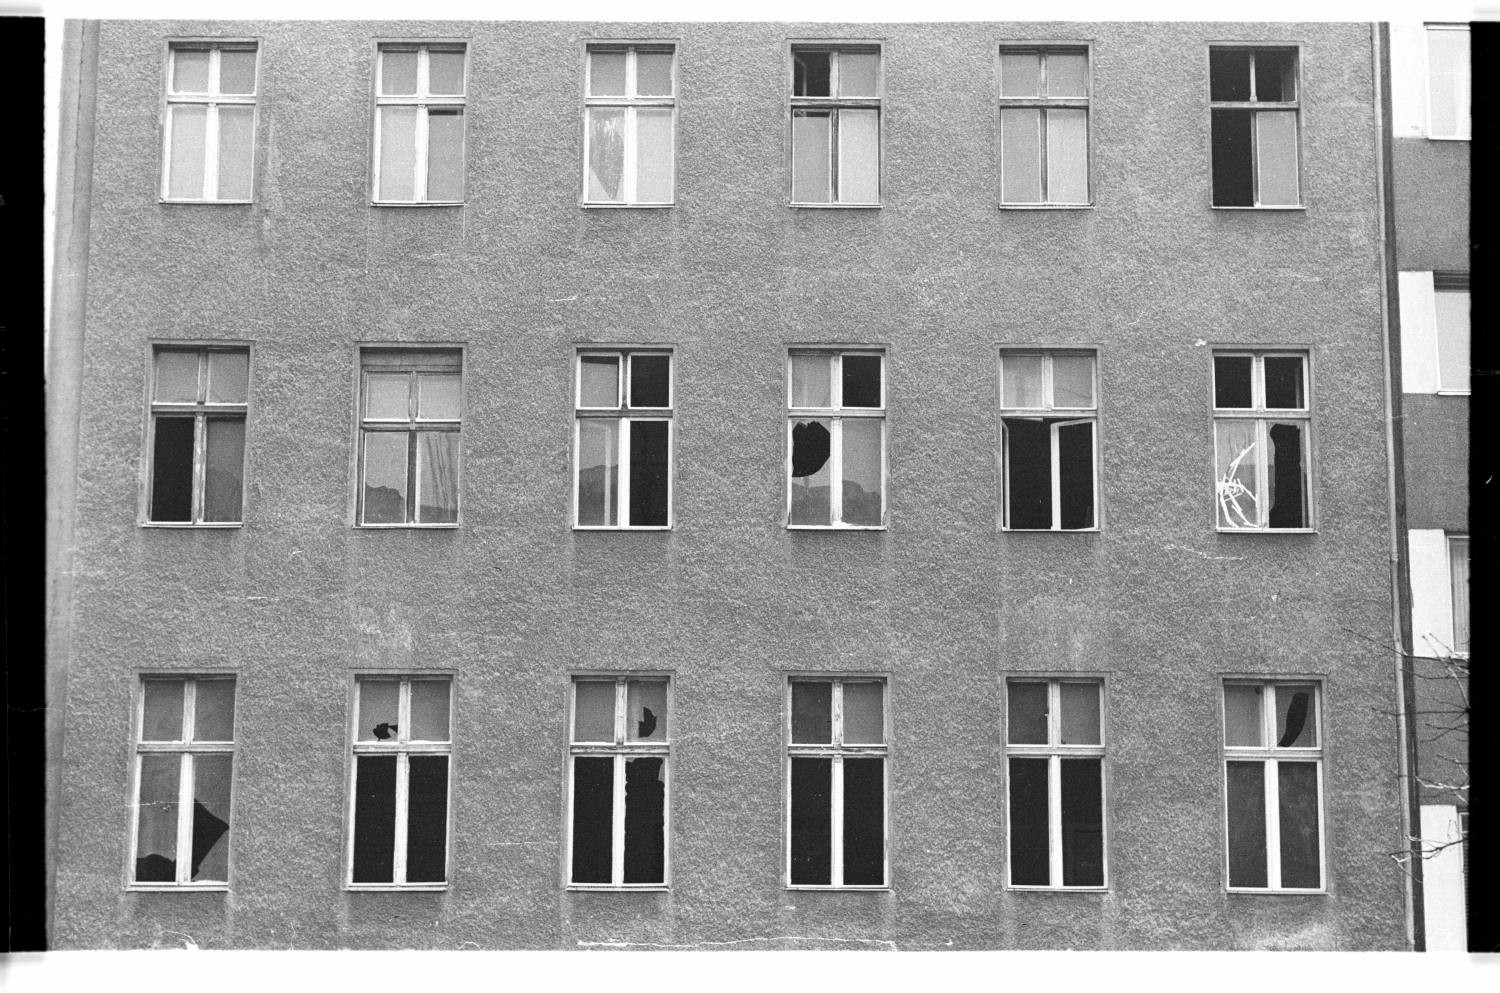 Kleinbildnegative: Besetztes Haus, Potsdamer Str. 159, 1982 (Museen Tempelhof-Schöneberg/Jürgen Henschel RR-F)